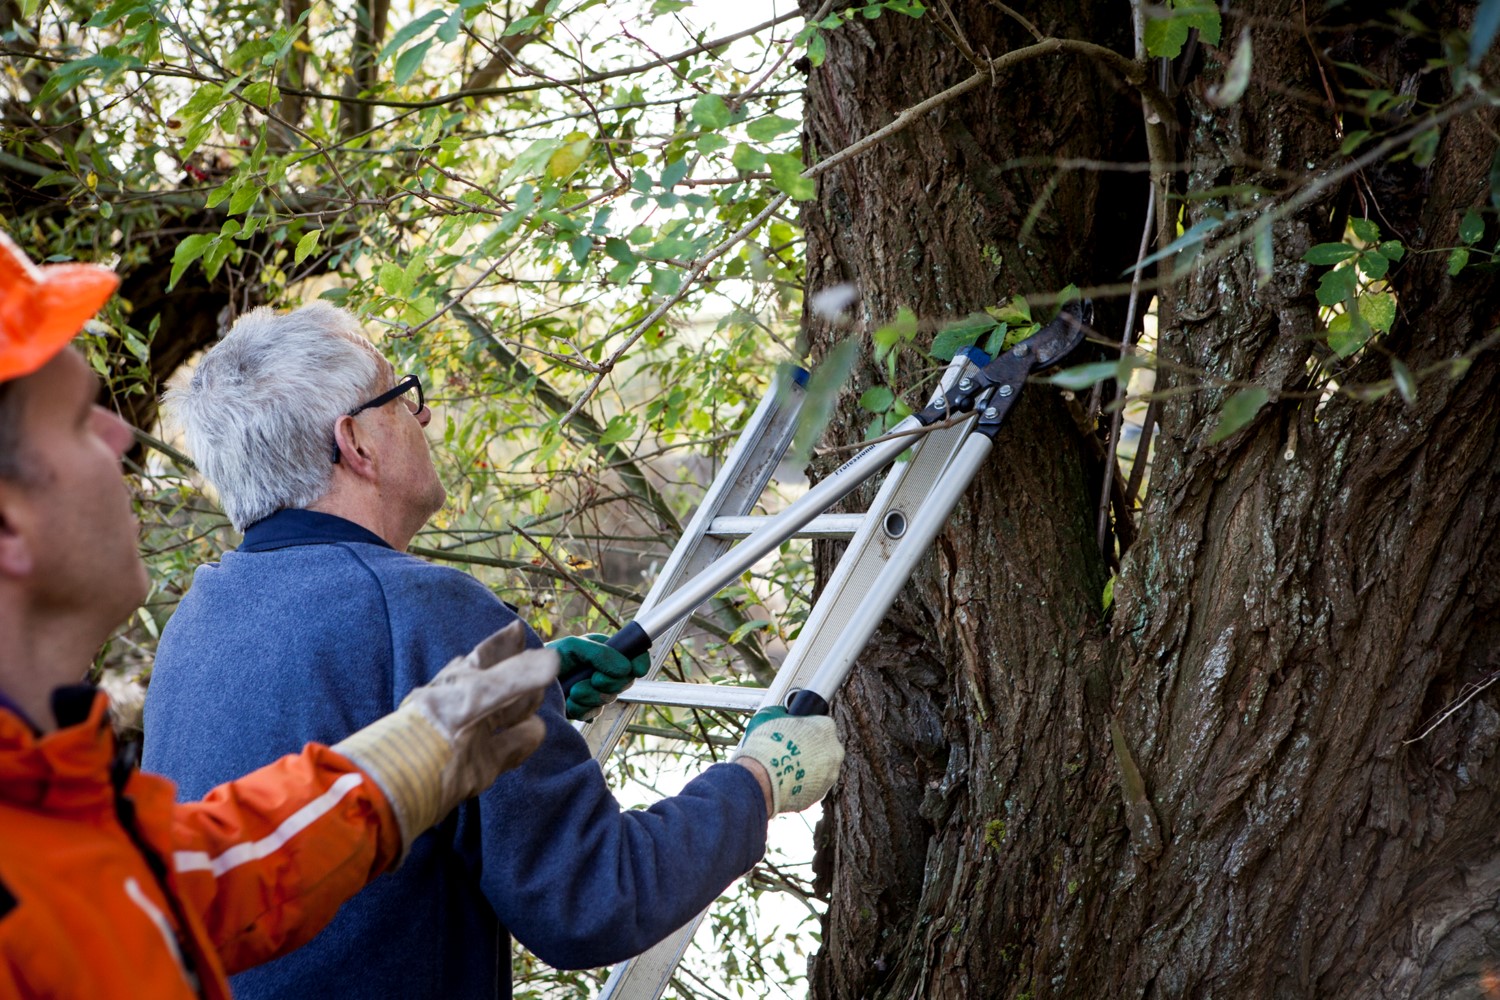 vrijwilligers plaatsen ladder tegen boom voor snoeiwerk